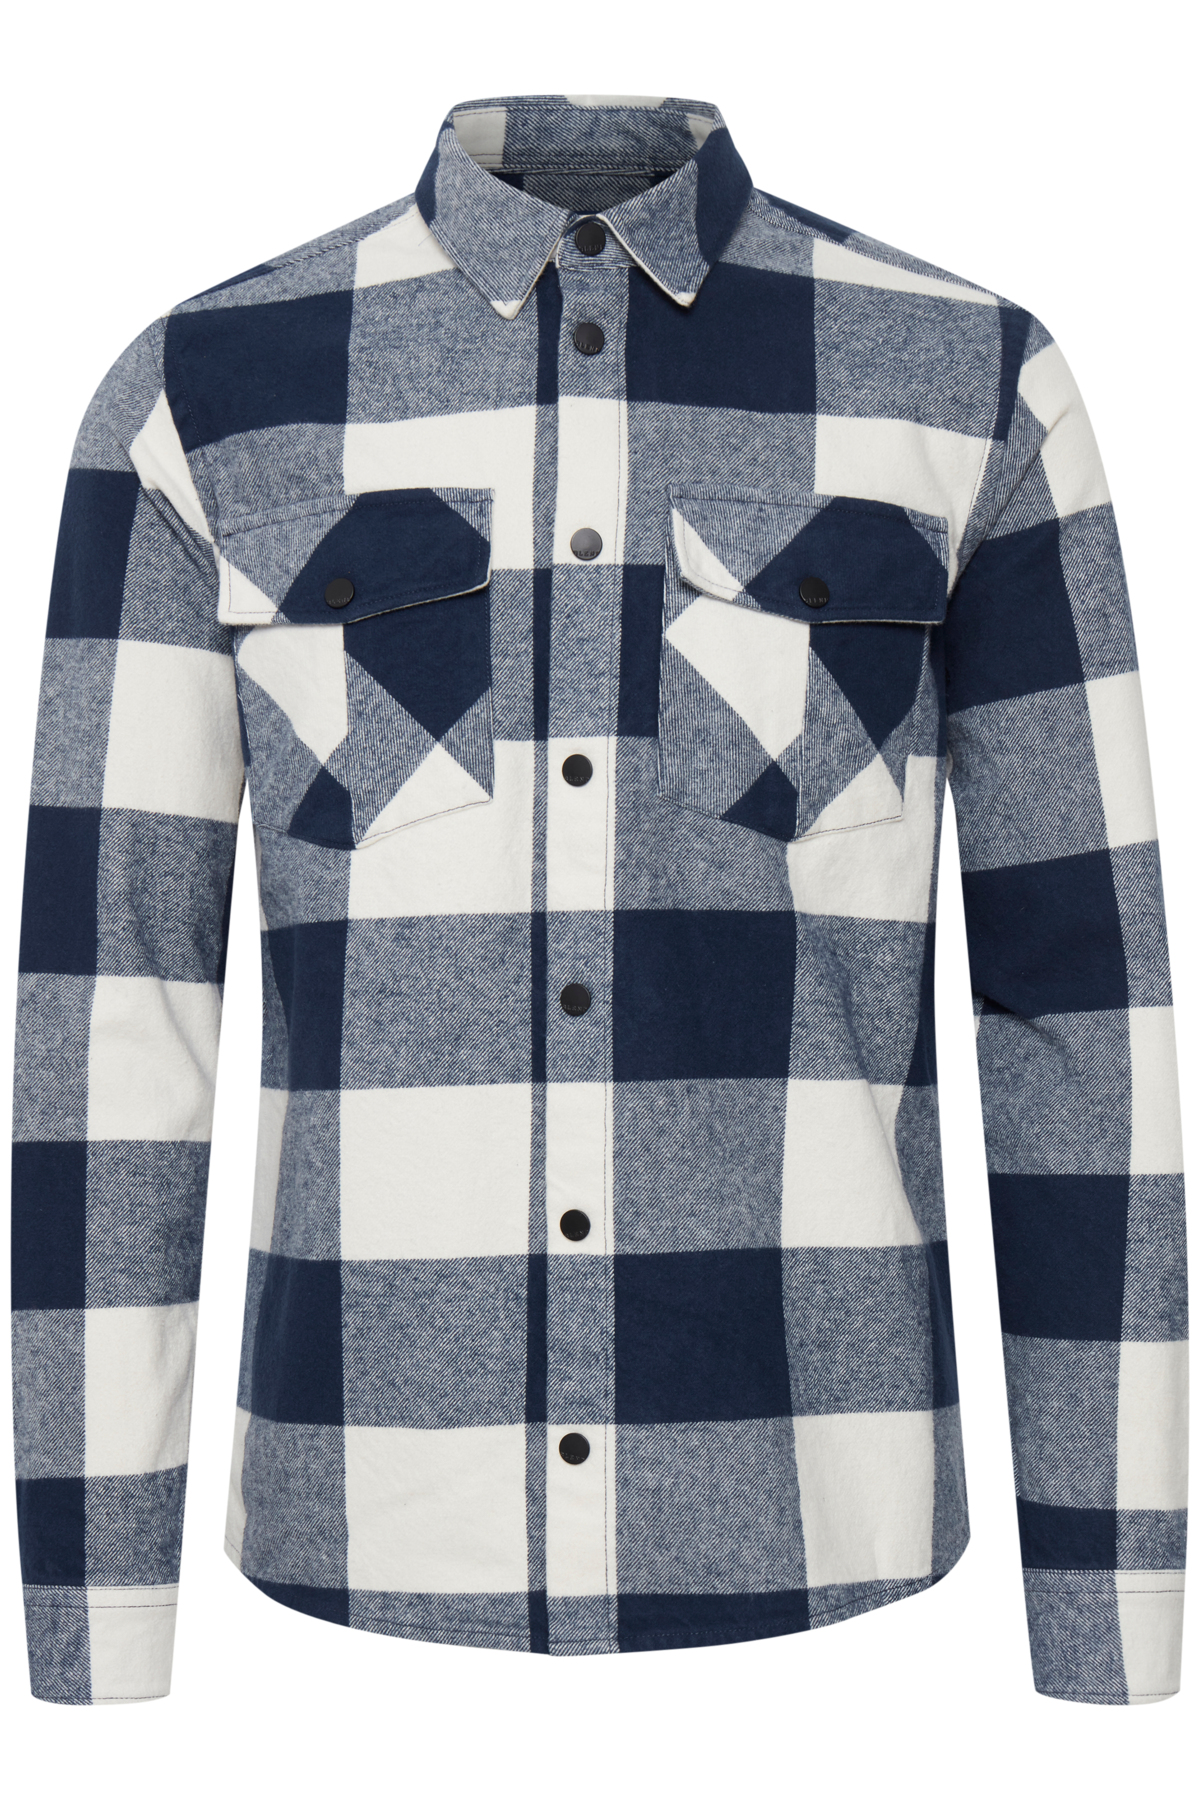 Abbigliamento Uomo BLEND Camicia in Blu Scuro 